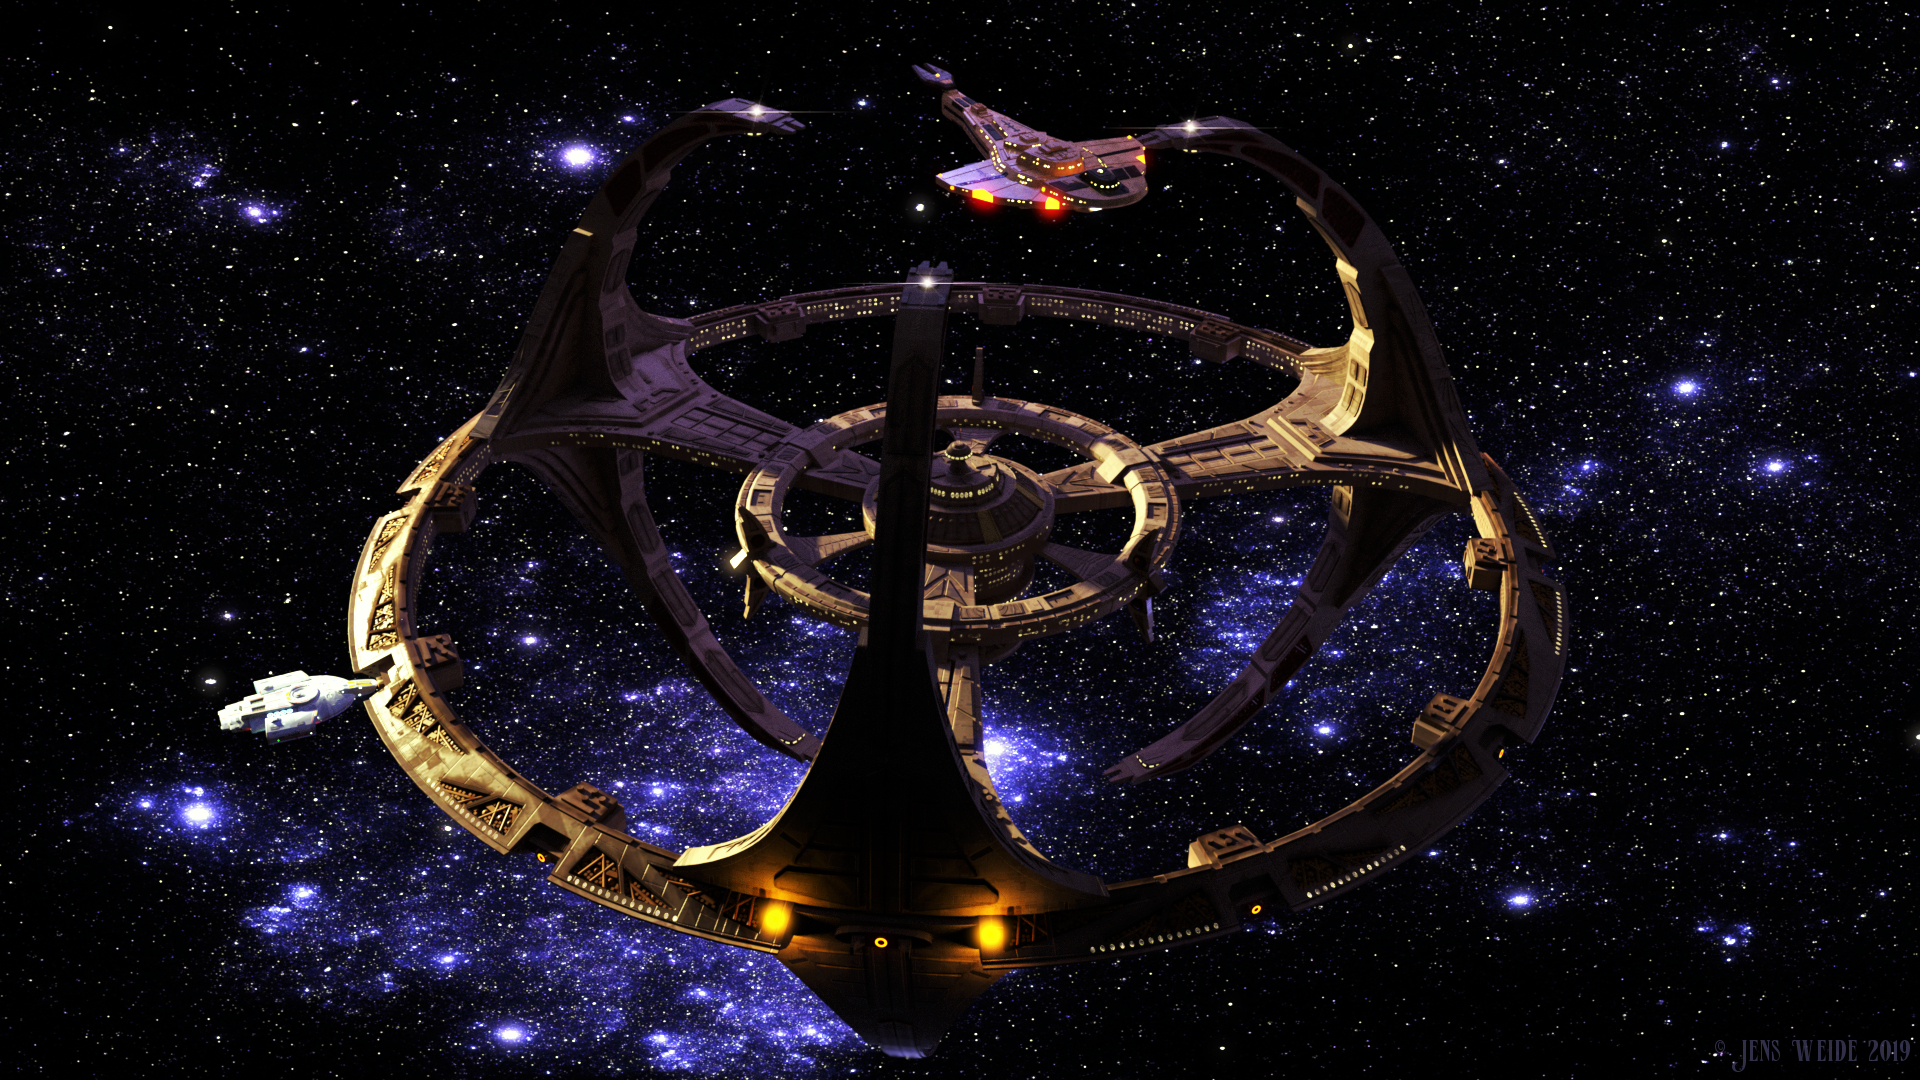 Bộ tranh Deep Space Nine của JensDD sẽ khiến bạn mê mẩn từ cái nhìn đầu tiên. Tạo cảm hứng cho bạn với những thước phim tuyệt vời trong bộ phim Star Trek này. Translation: JensDD\'s Deep Space Nine artwork will make you fall in love at first sight. Inspire you with great scenes in this Star Trek movie. 